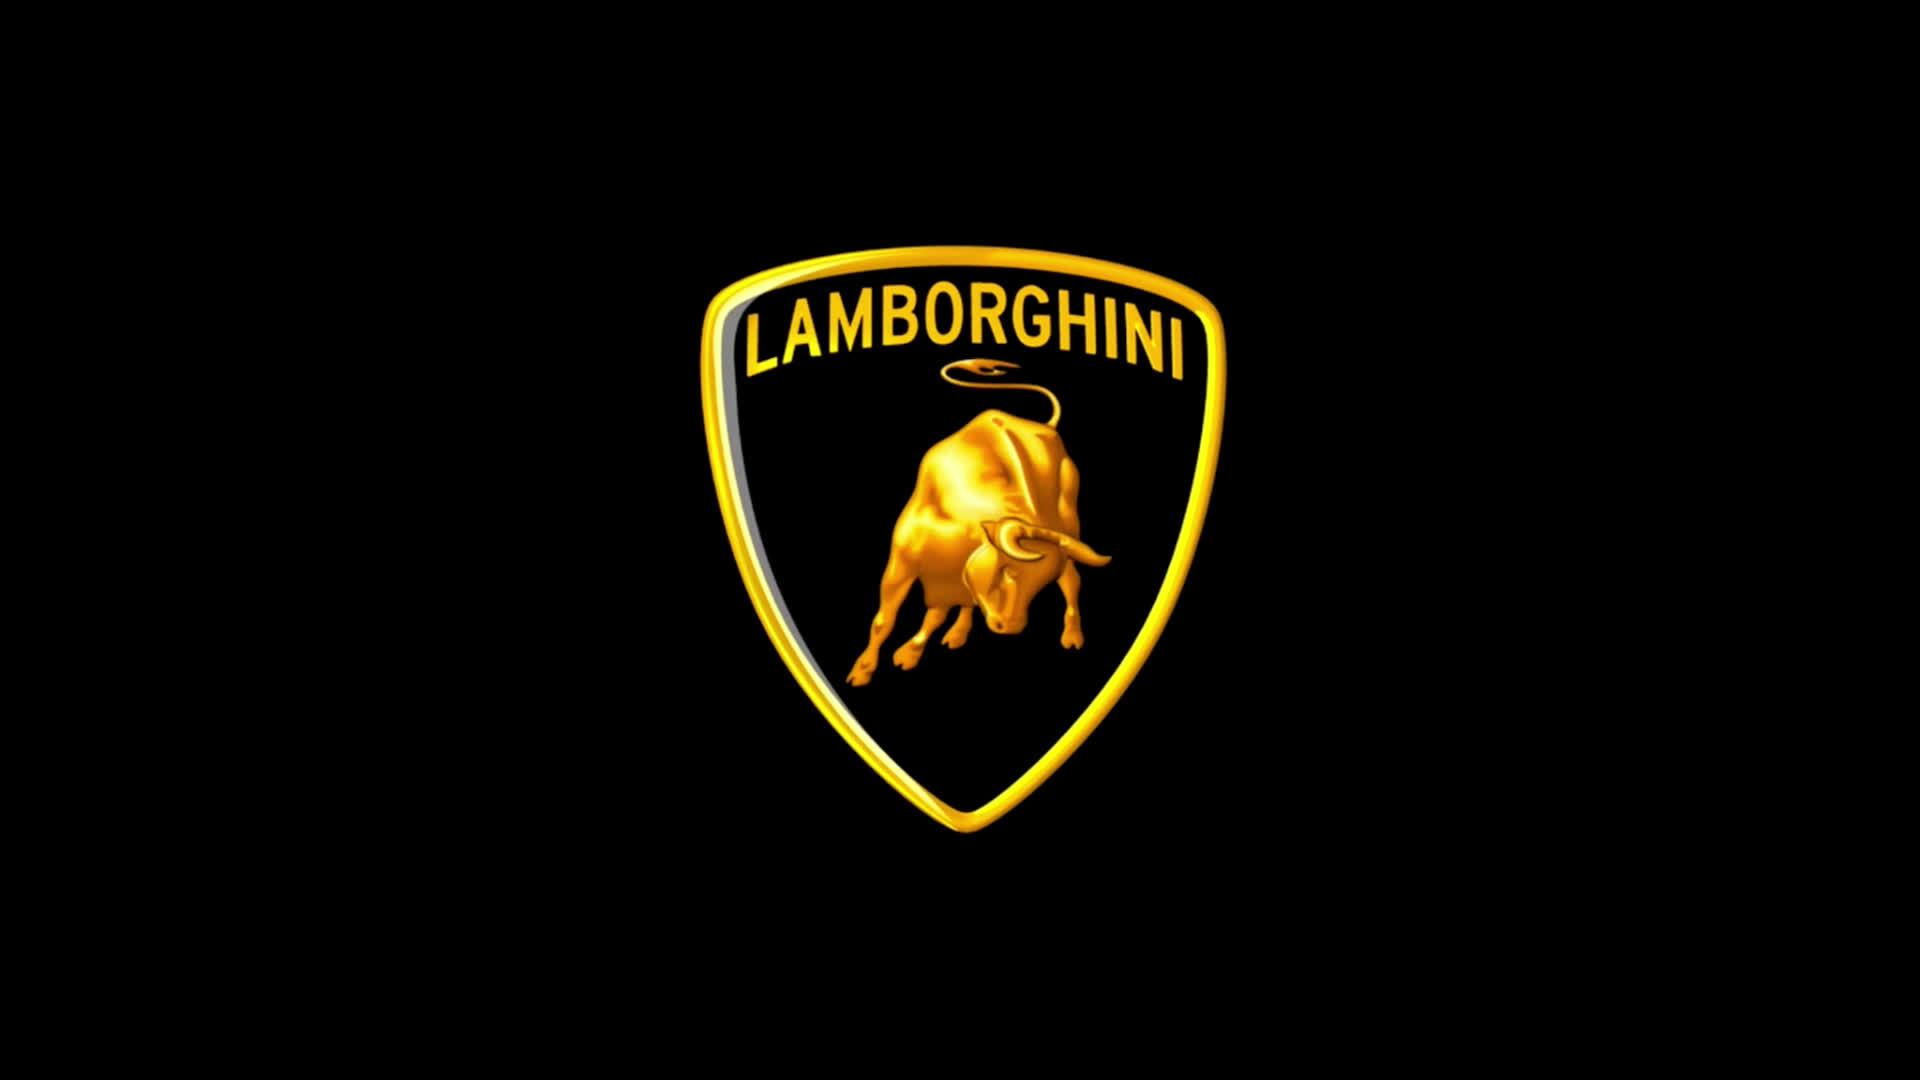 Lamborghini Logo 4K Wallpaper 4k Ultra 高清壁纸 | 桌面背景 | 3840x2160 | ID ...